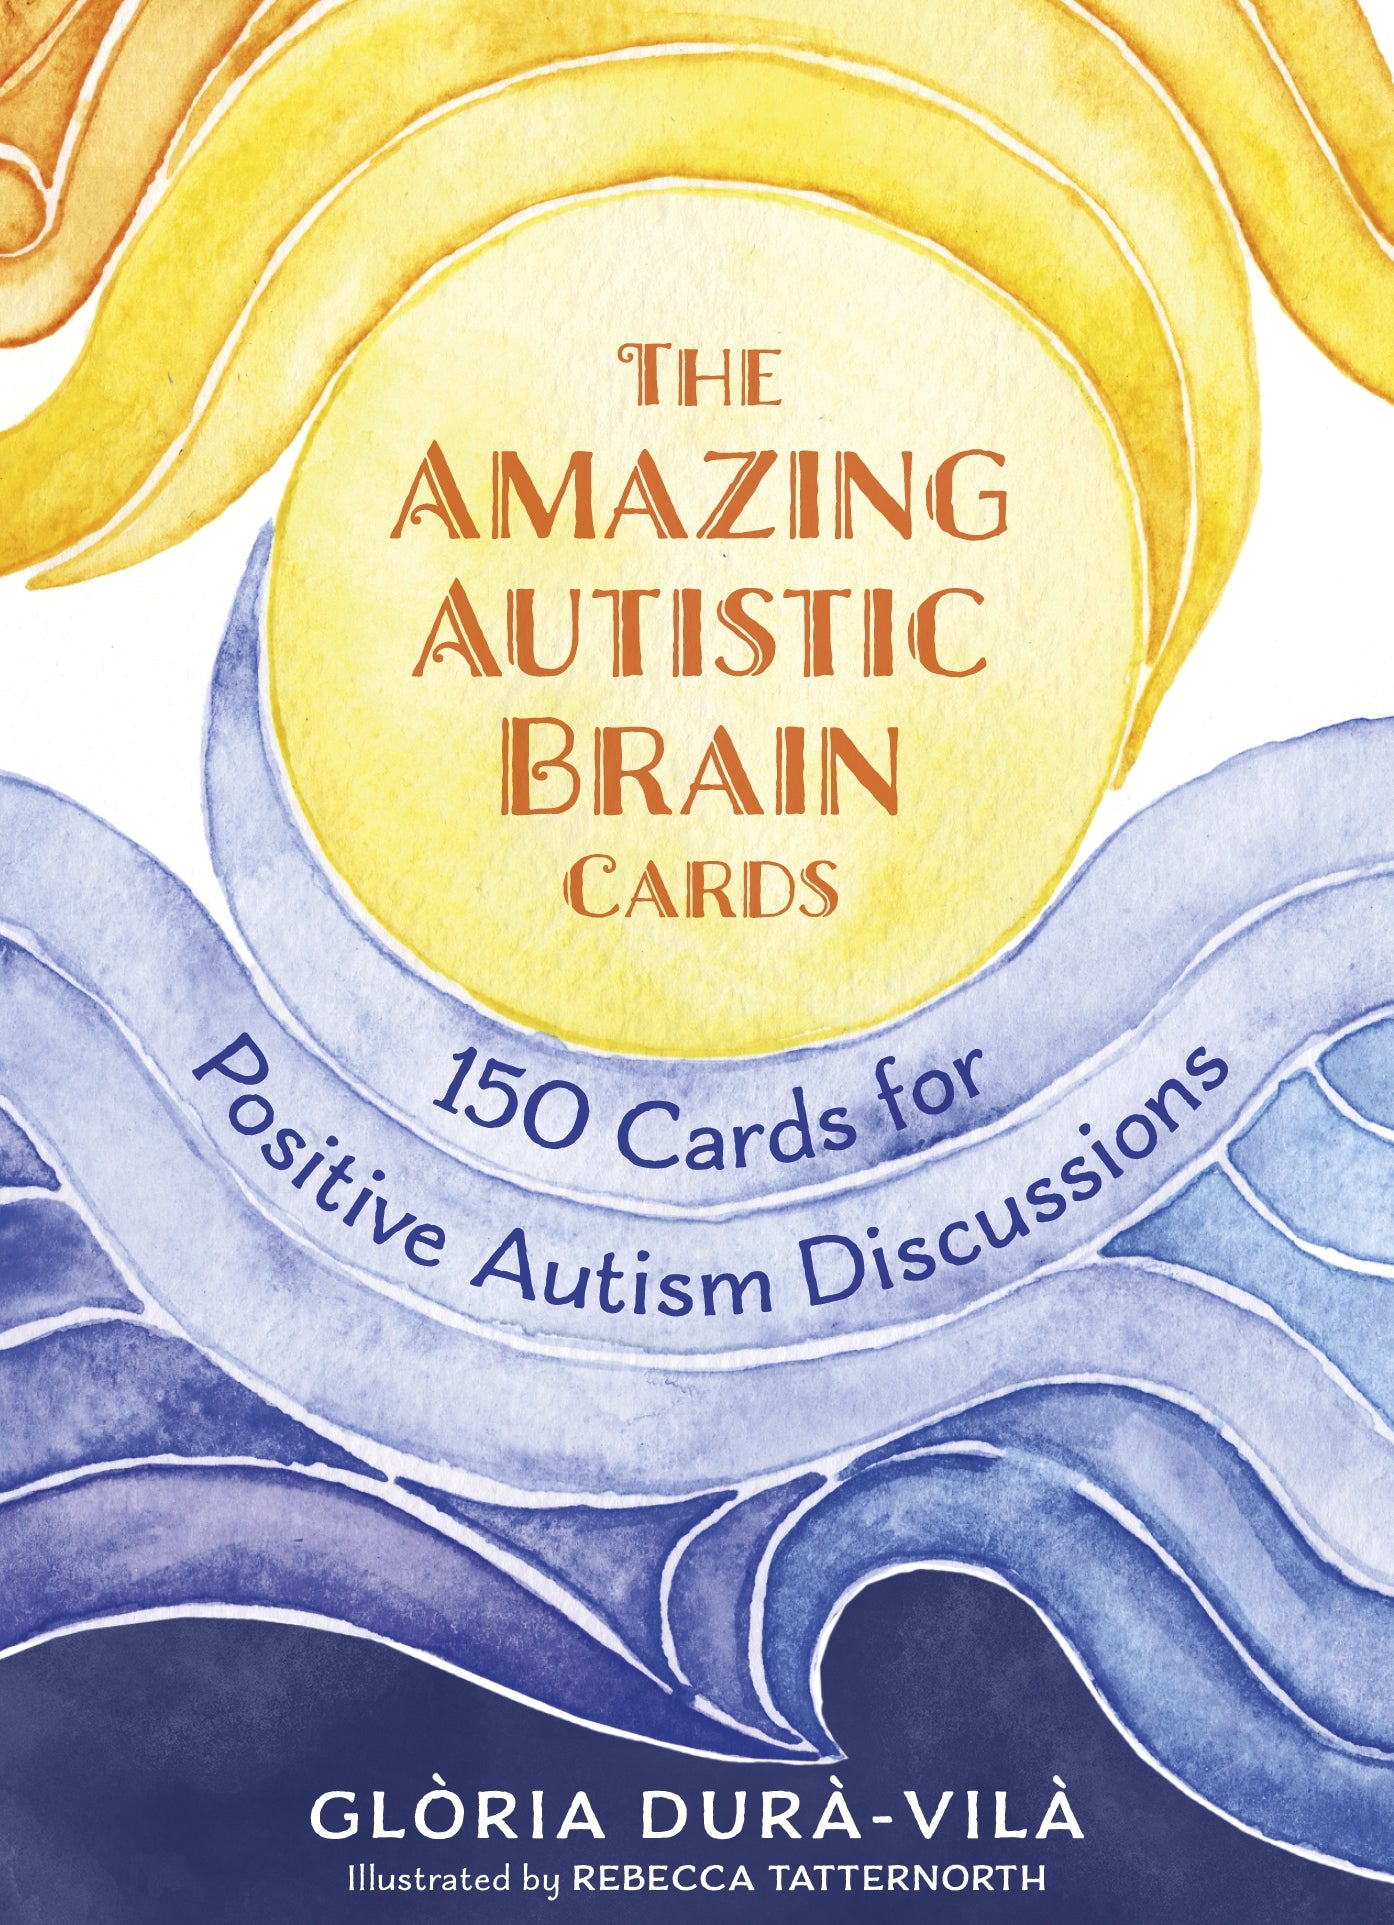 The Amazing Autistic Brain Cards by Rebecca Tatternorth, Glòria Durà-Vilà